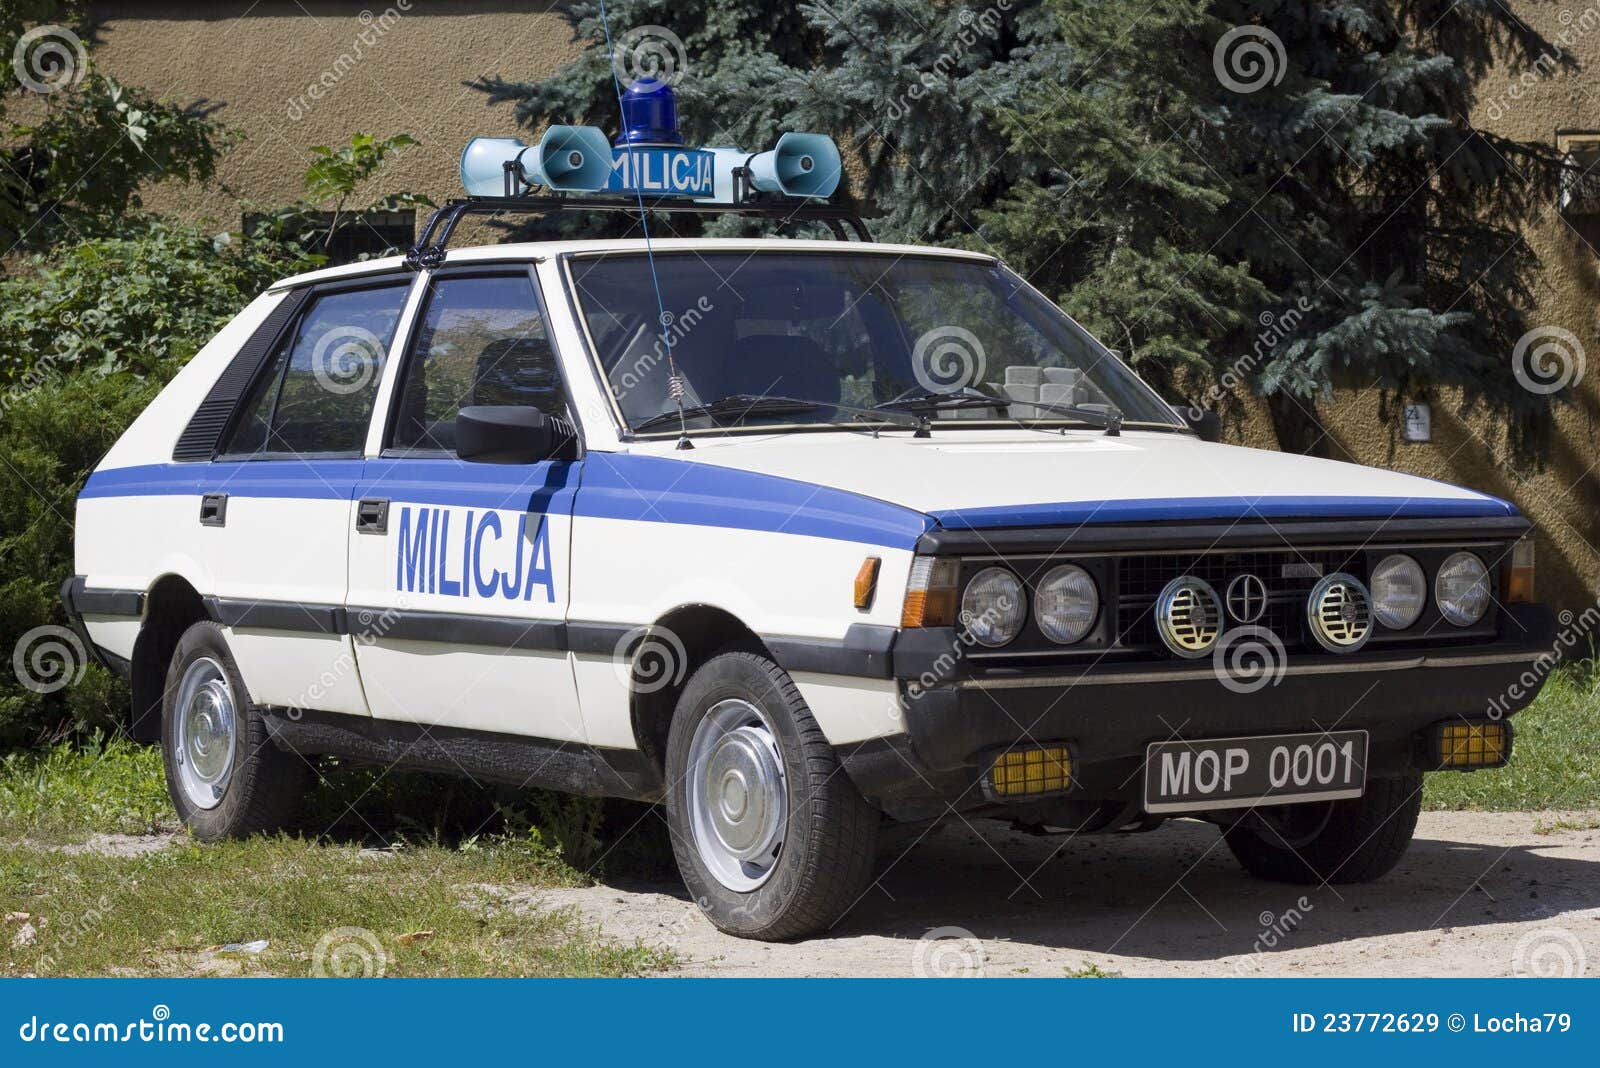 FSO Polonez as car police in police base in Poznan on july 24, 2011.